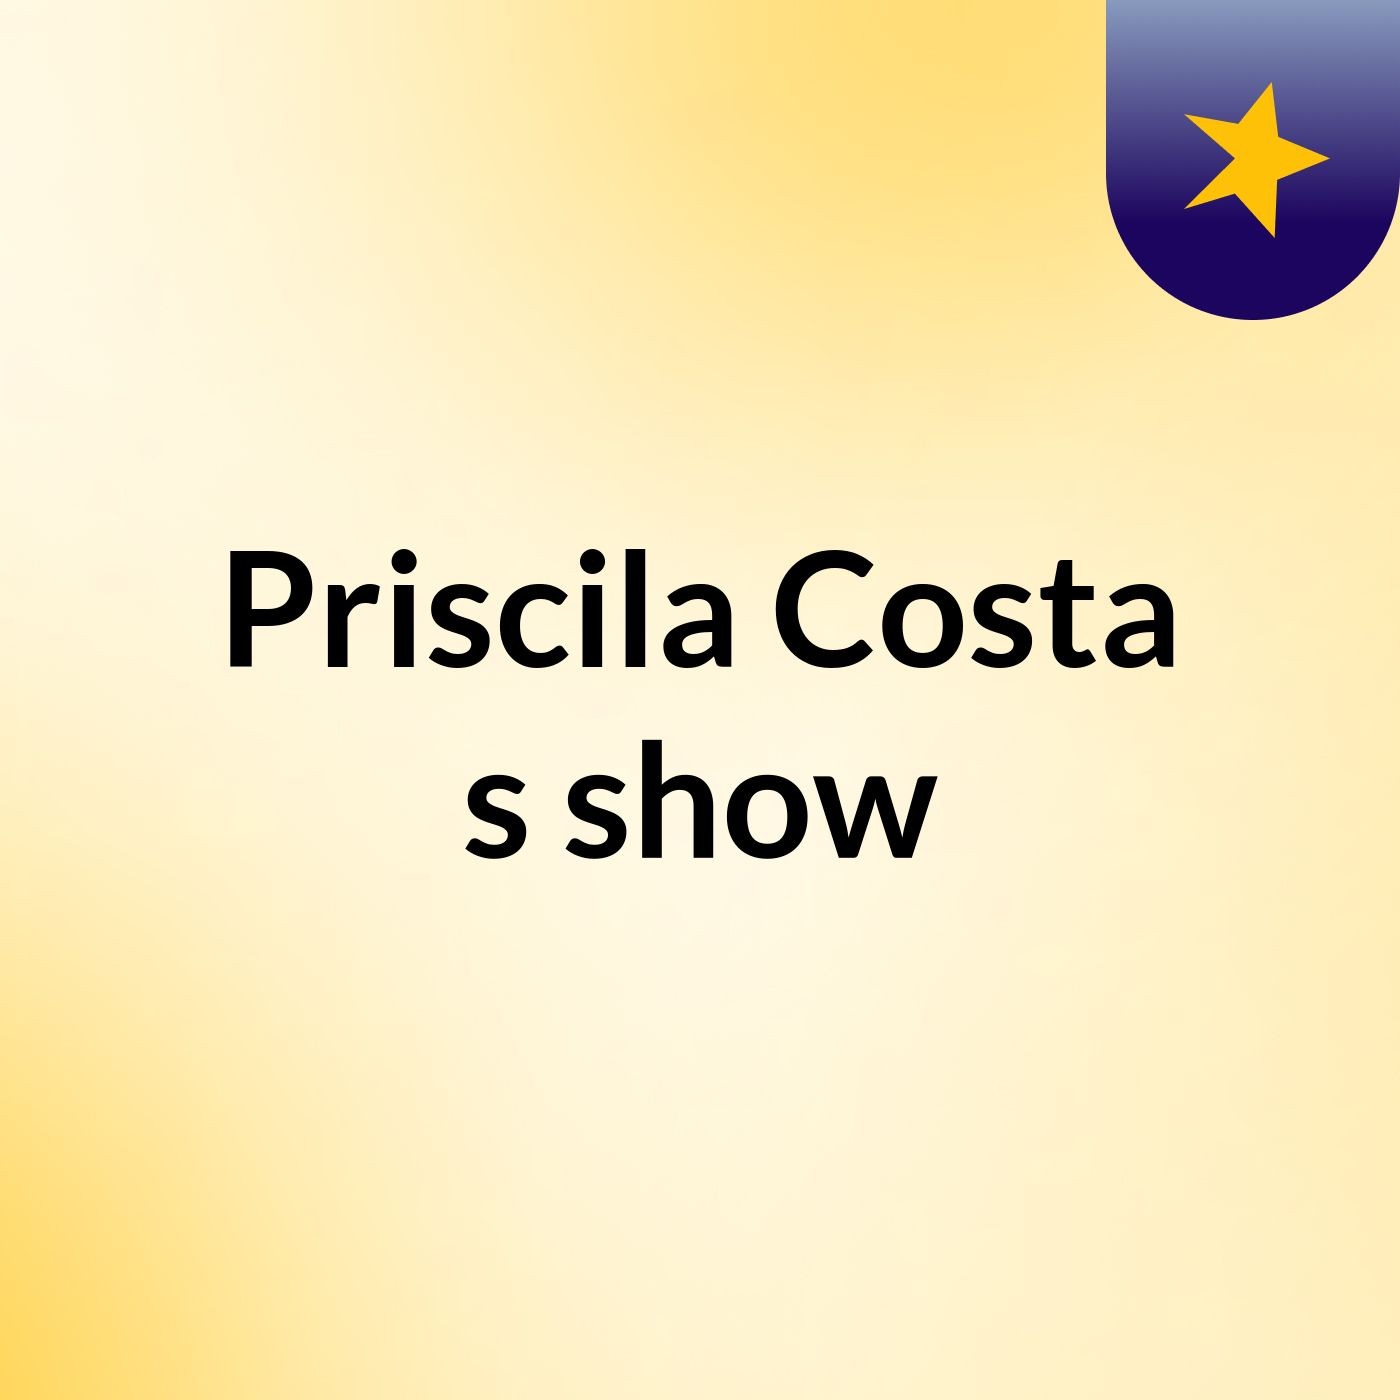 Priscila Costa's show